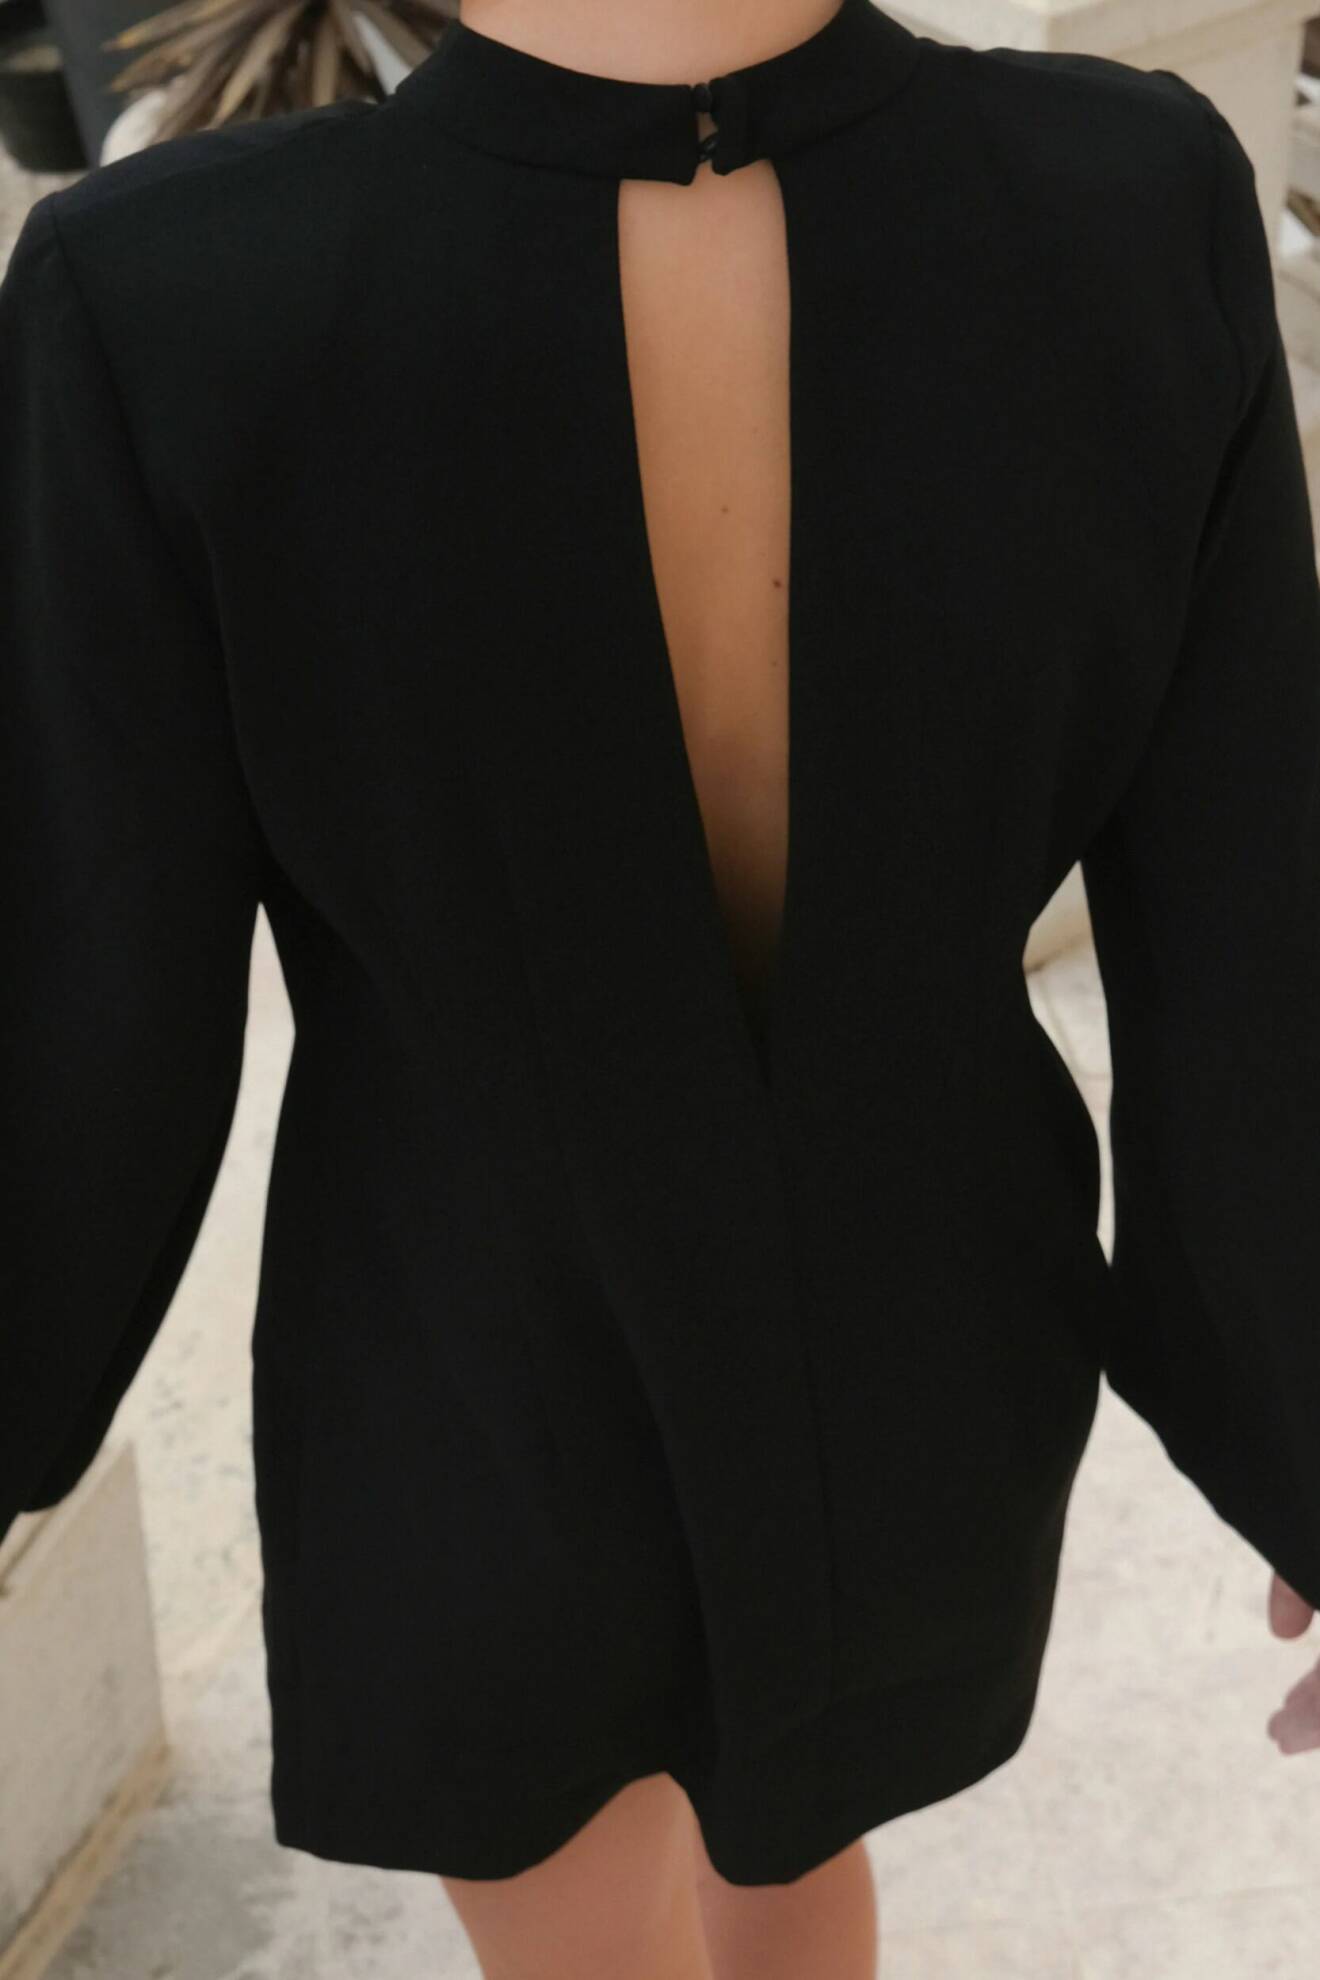 Spana in denna svarta klänning med öppen ryggdetalj och vida ärmar från Stylein.